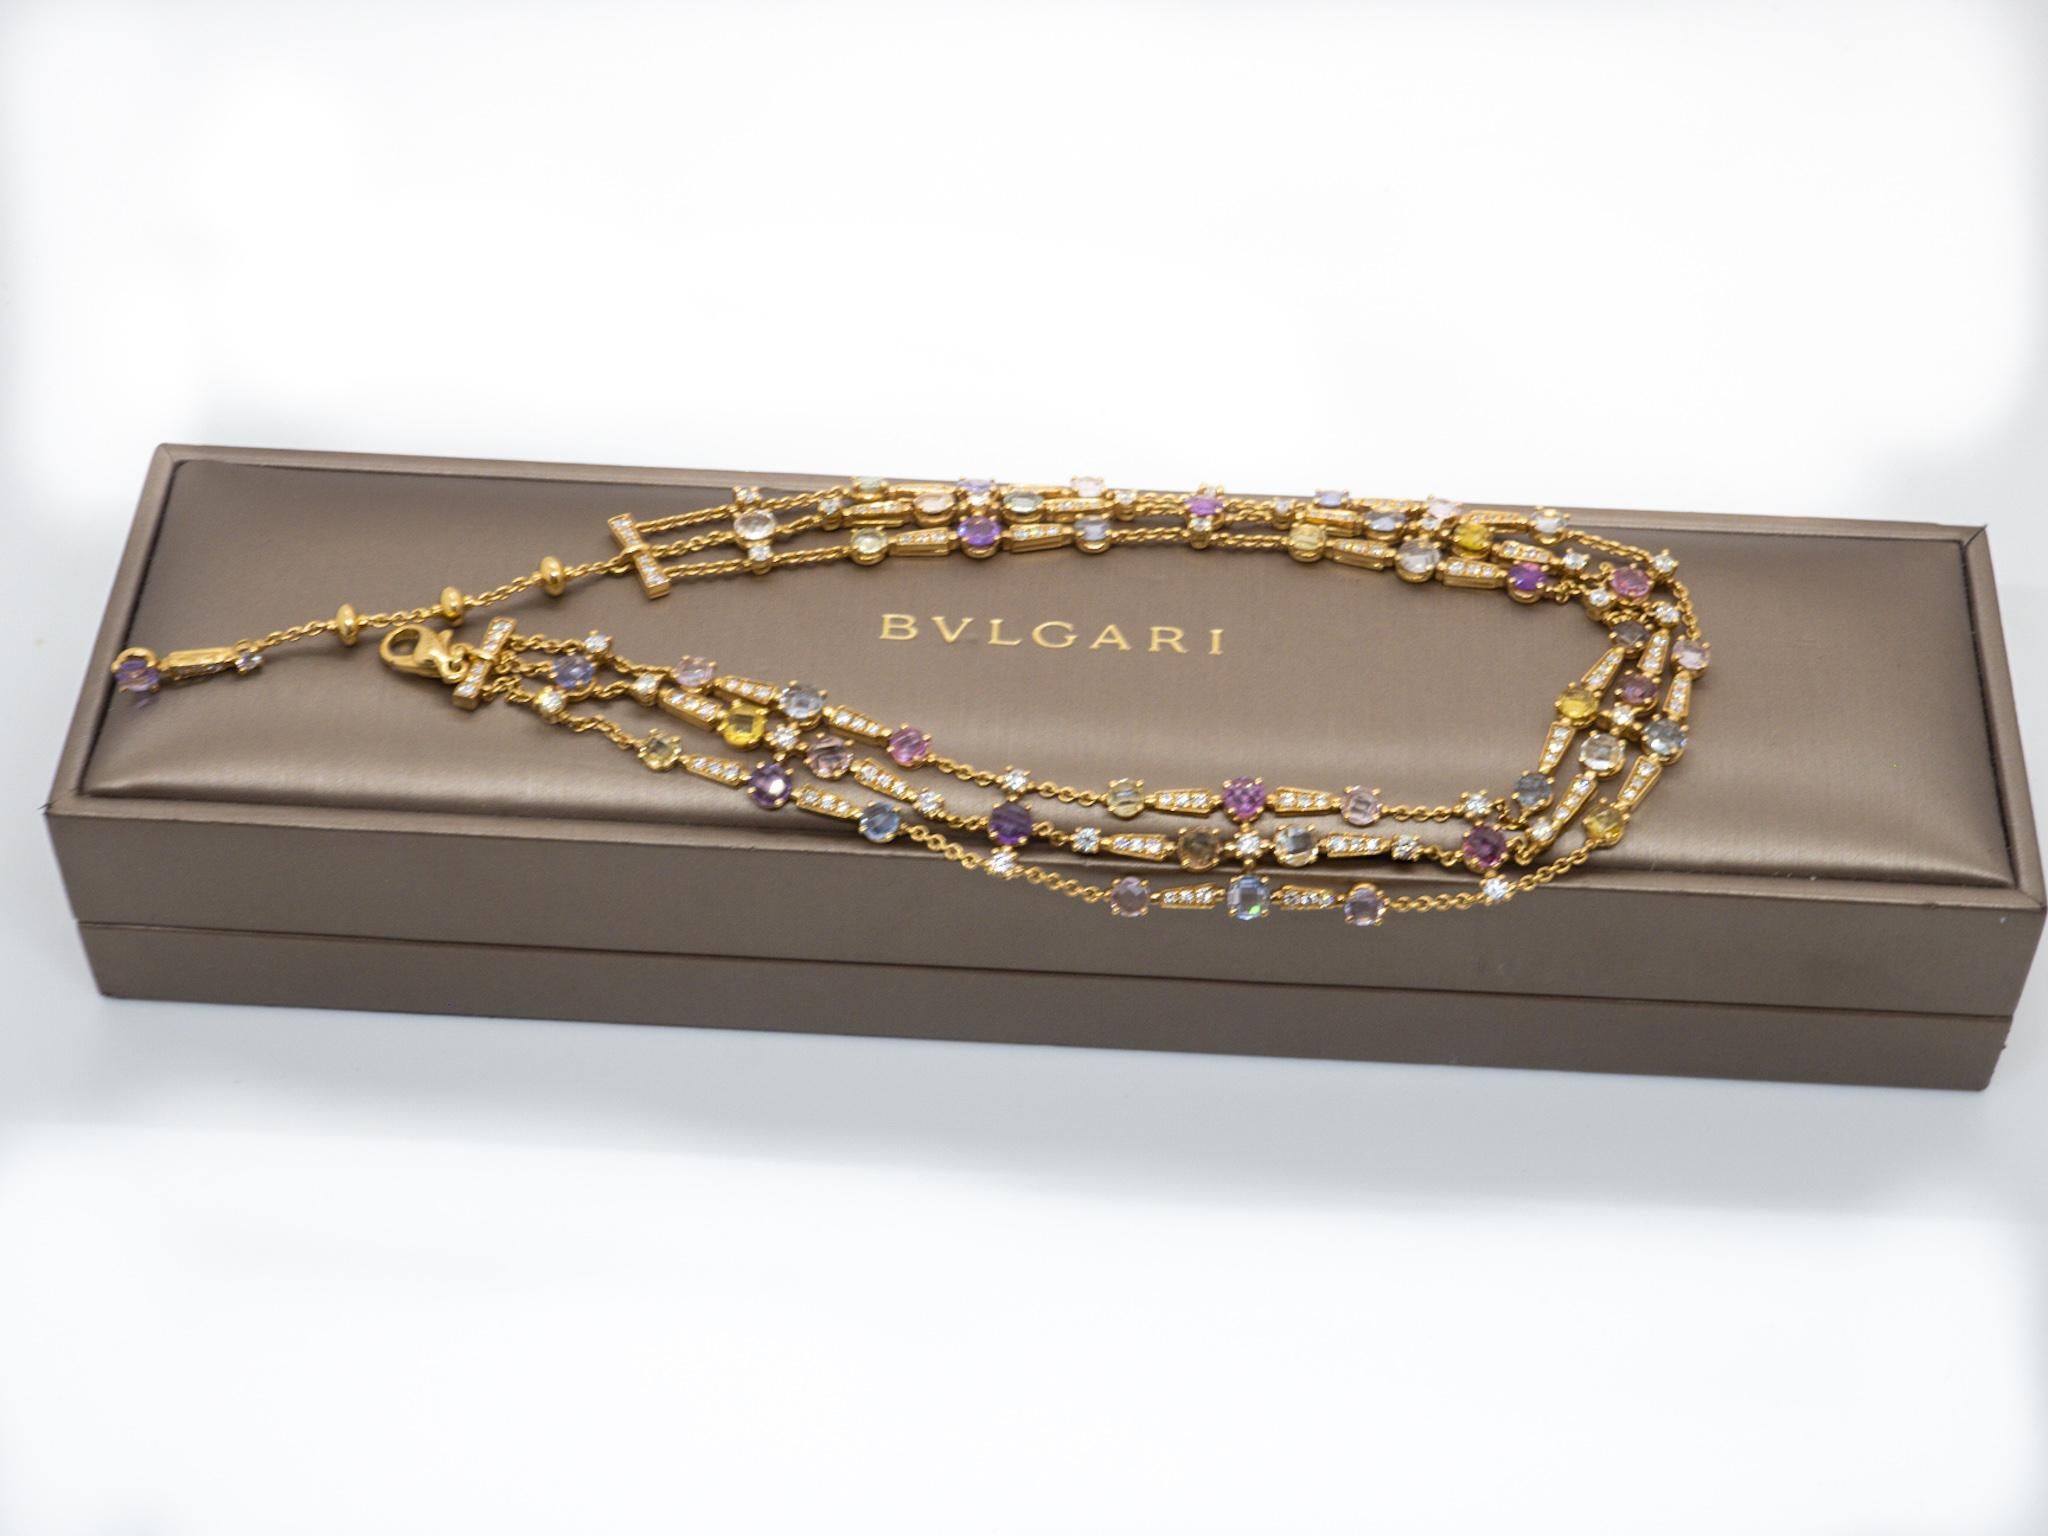 Bulgari Allegra Diamond and Multicolore Sapphire Necklace 18 Karat Yellow Gold  In Excellent Condition For Sale In Geneva, CH